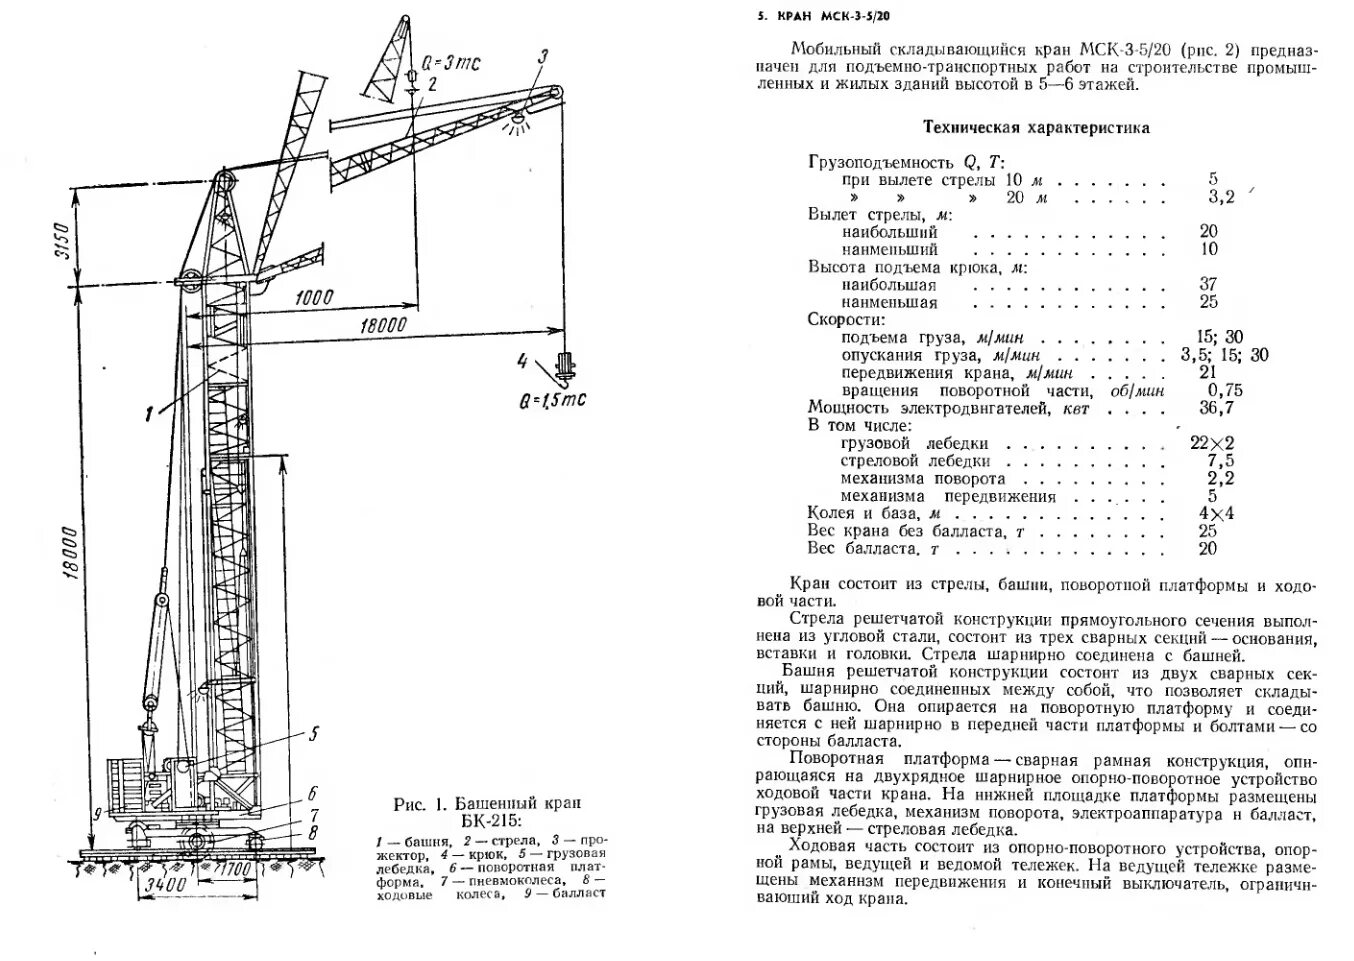 Схема работы башенного крана. Кран ТБ-630. Описание устройства и принципа действия башенного крана. Башенный кран КБ 402.